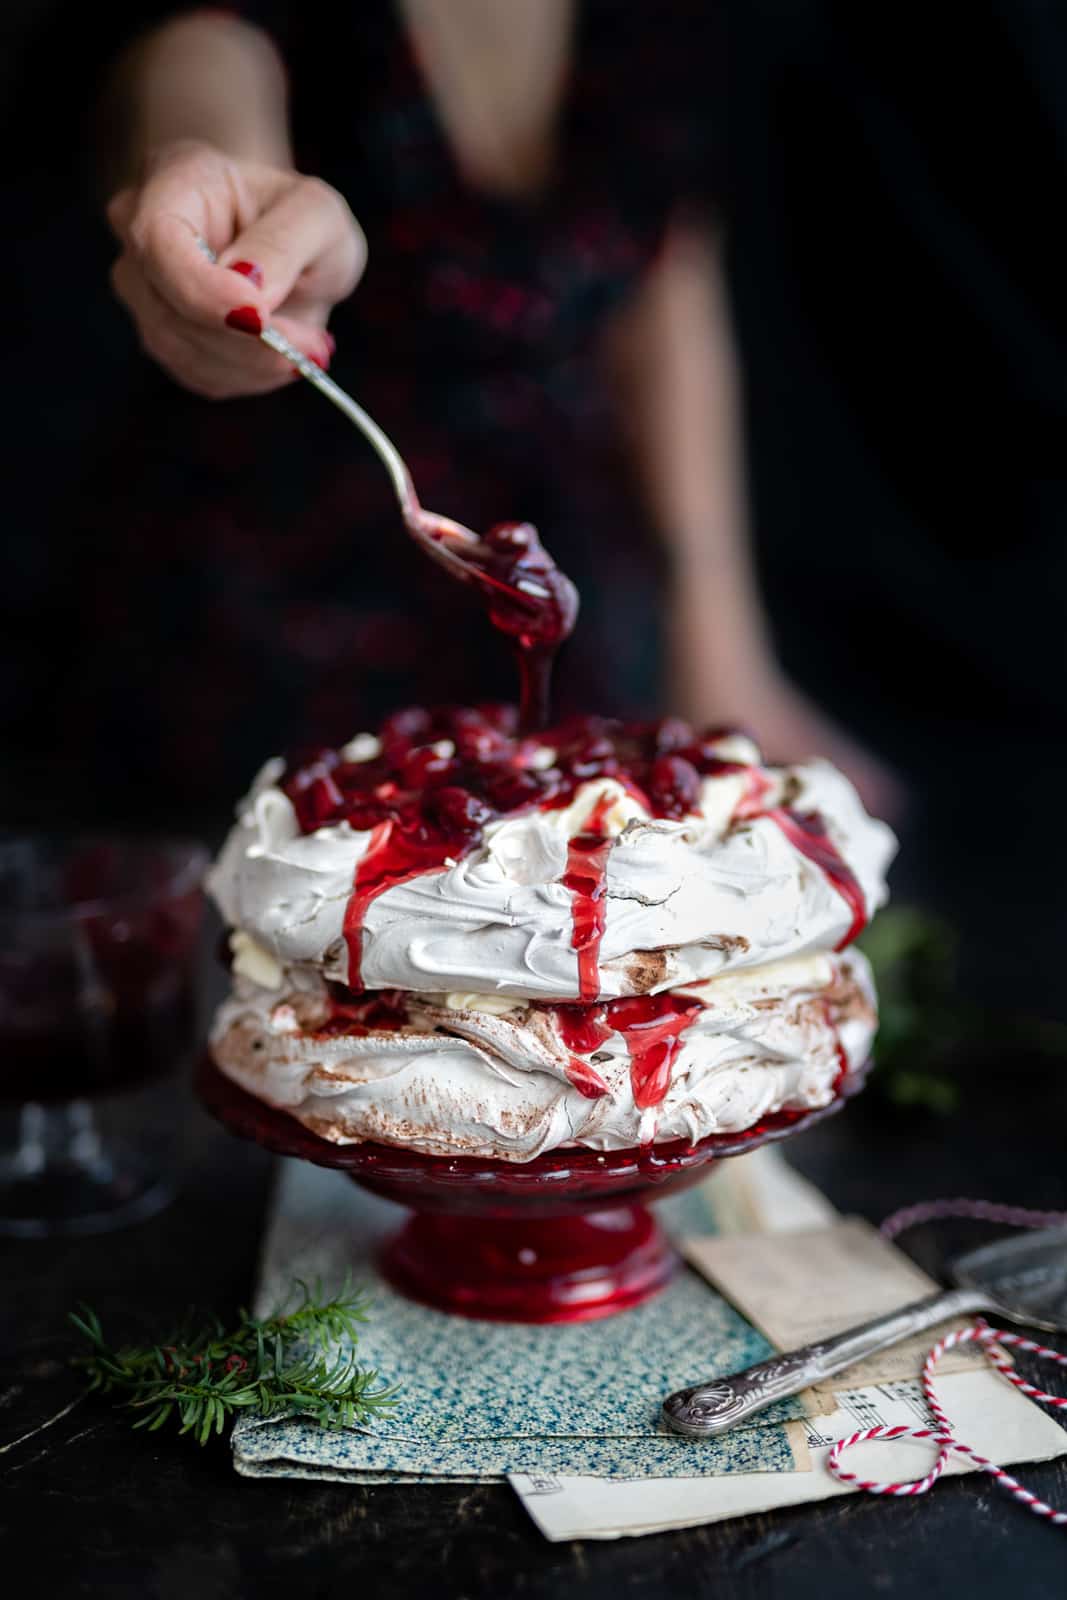 Pavlova cake with cream and cherries